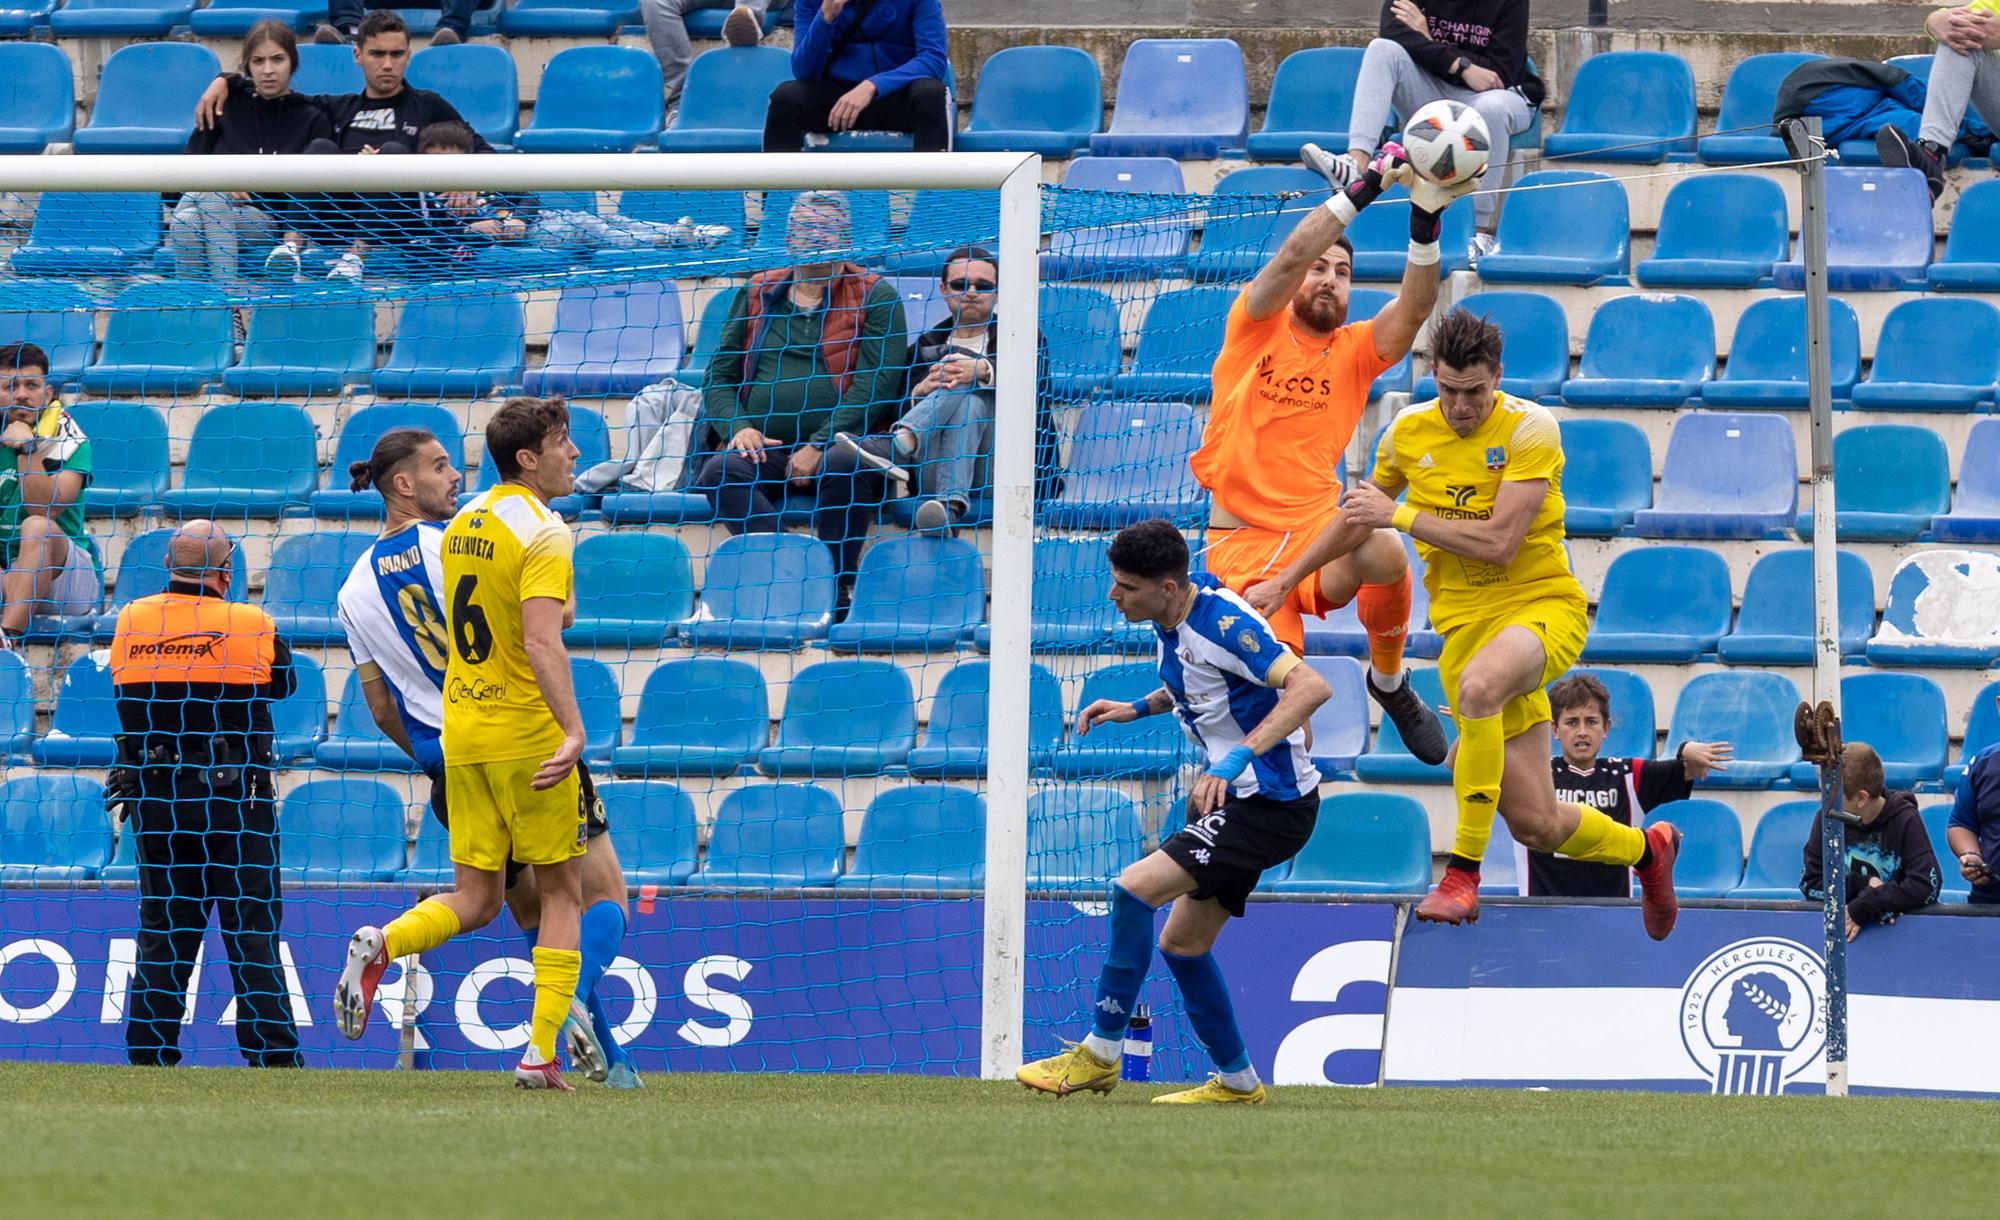 El Hércules vence gracias a un gran gol de Míchel Herrero (1-0)